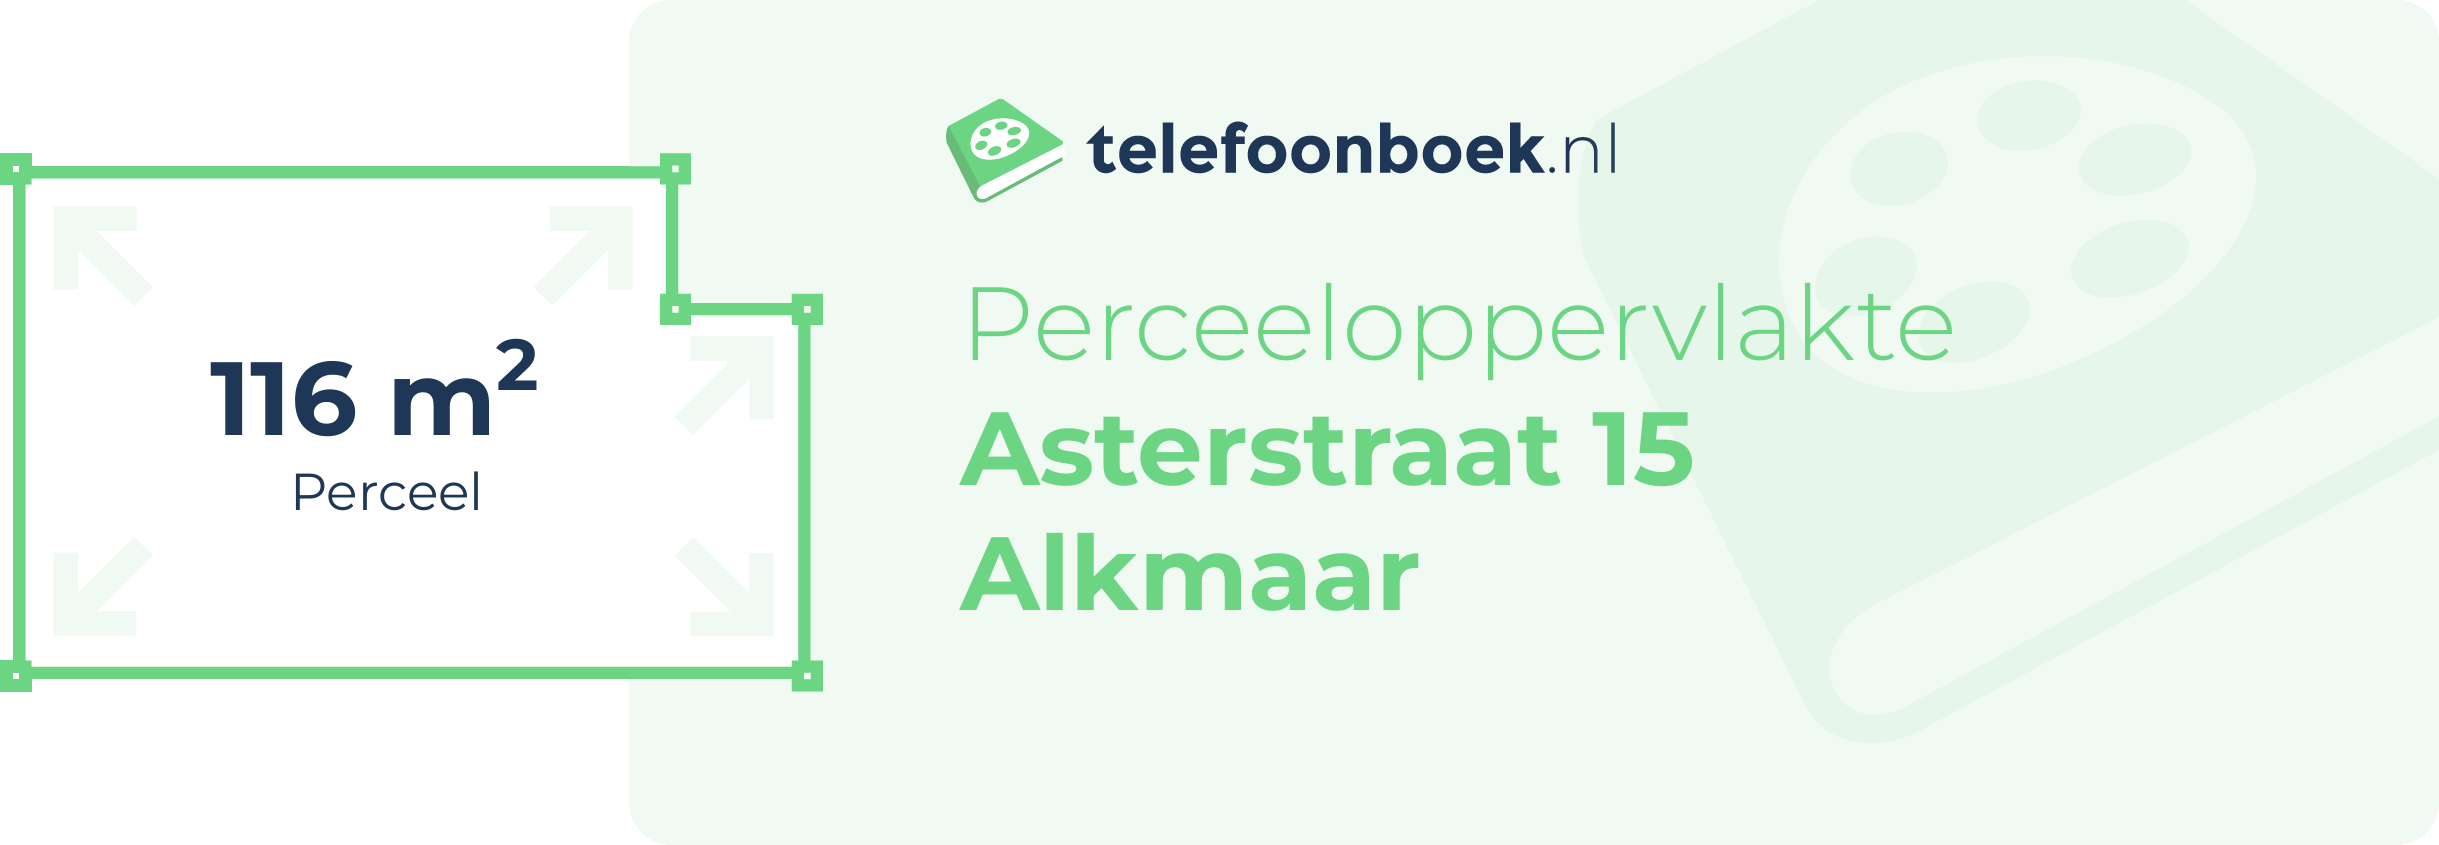 Perceeloppervlakte Asterstraat 15 Alkmaar